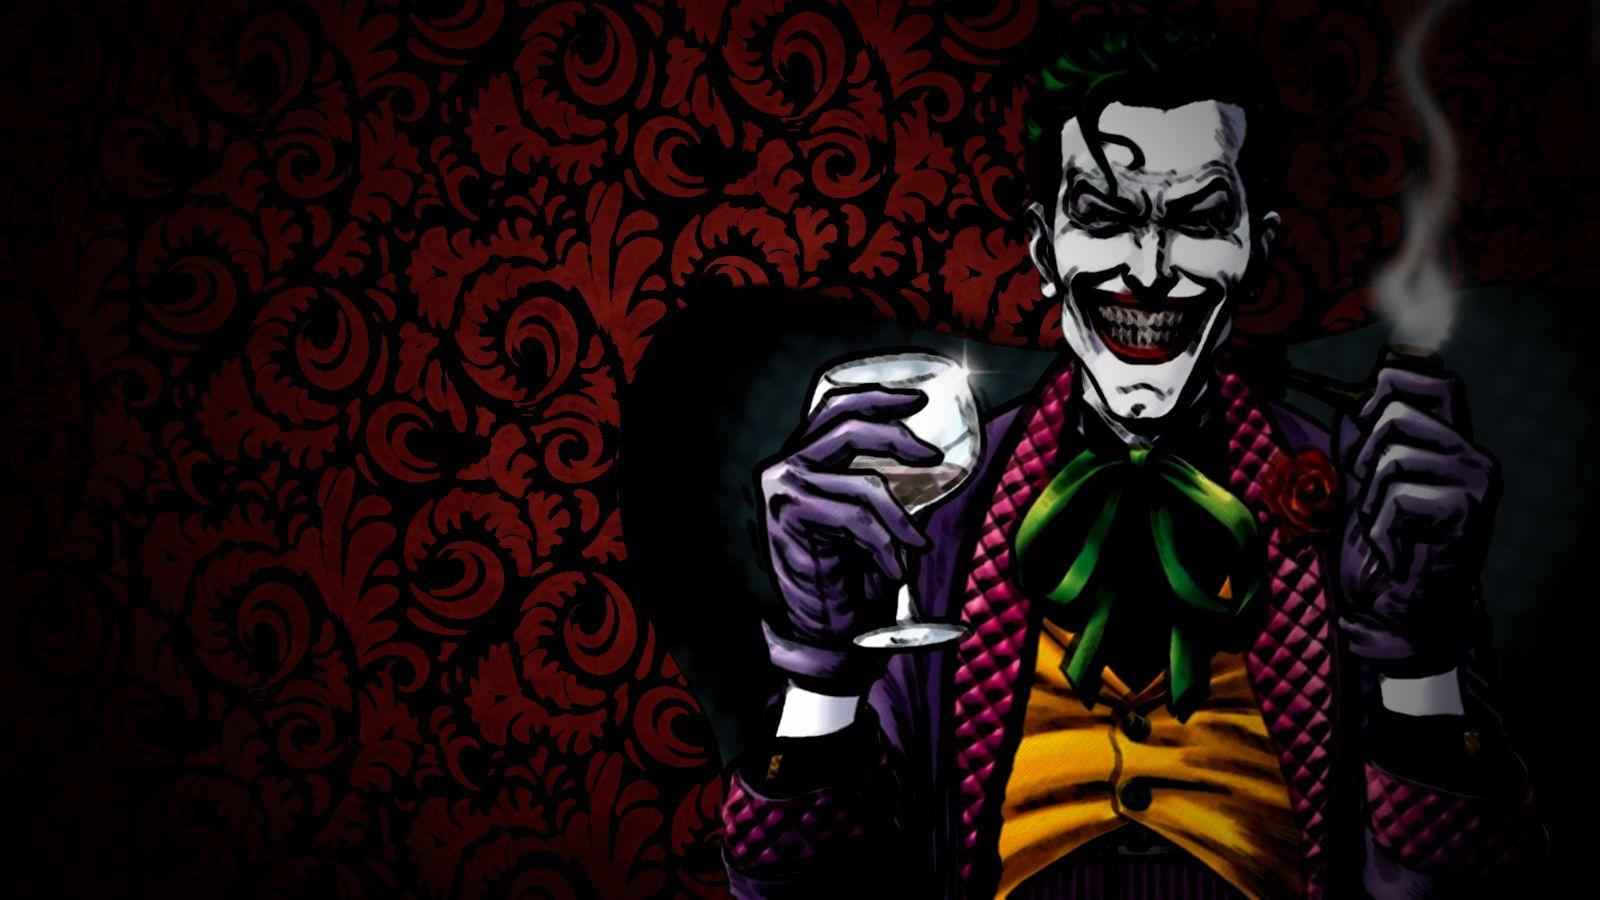 The Joker Wallpaper, HD The Joker Wallpaper and Photo. View